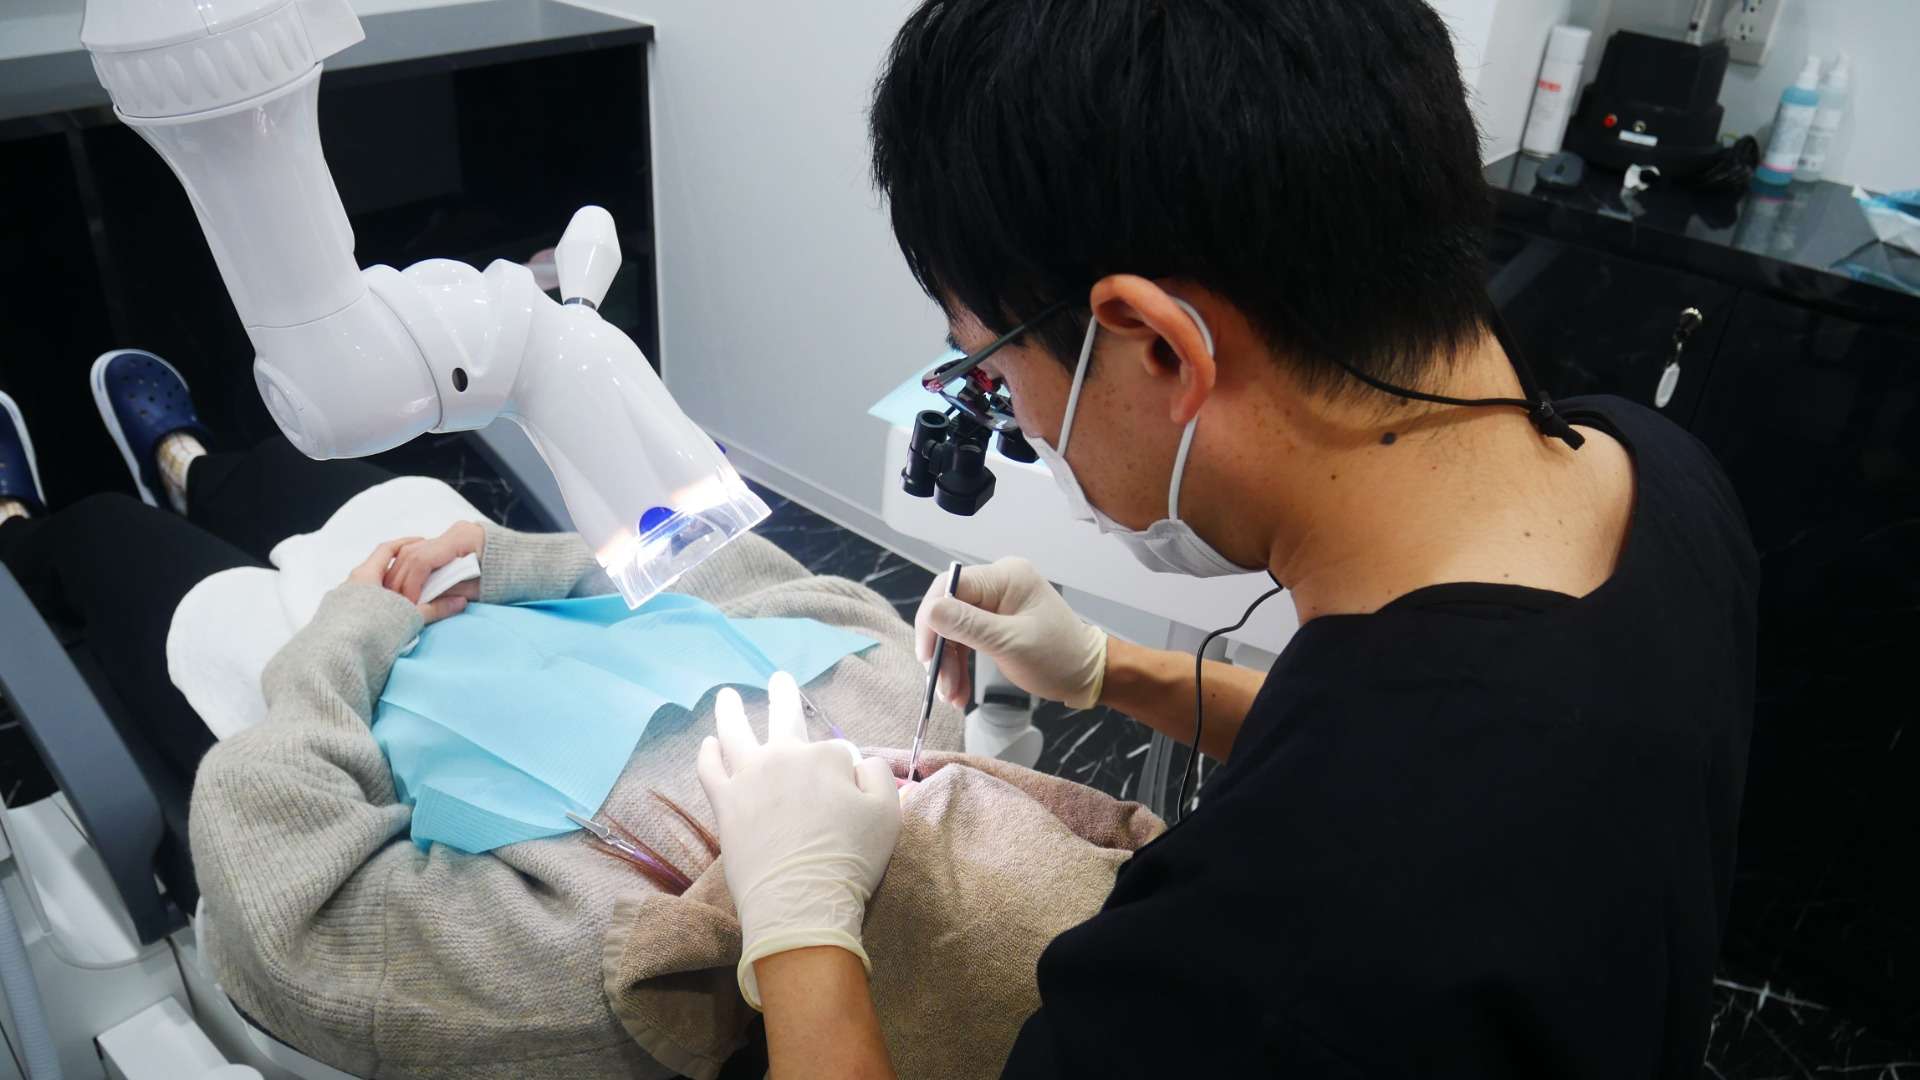 最新の審美歯科技術をいち早く導入し吉祥寺の笑顔に貢献します